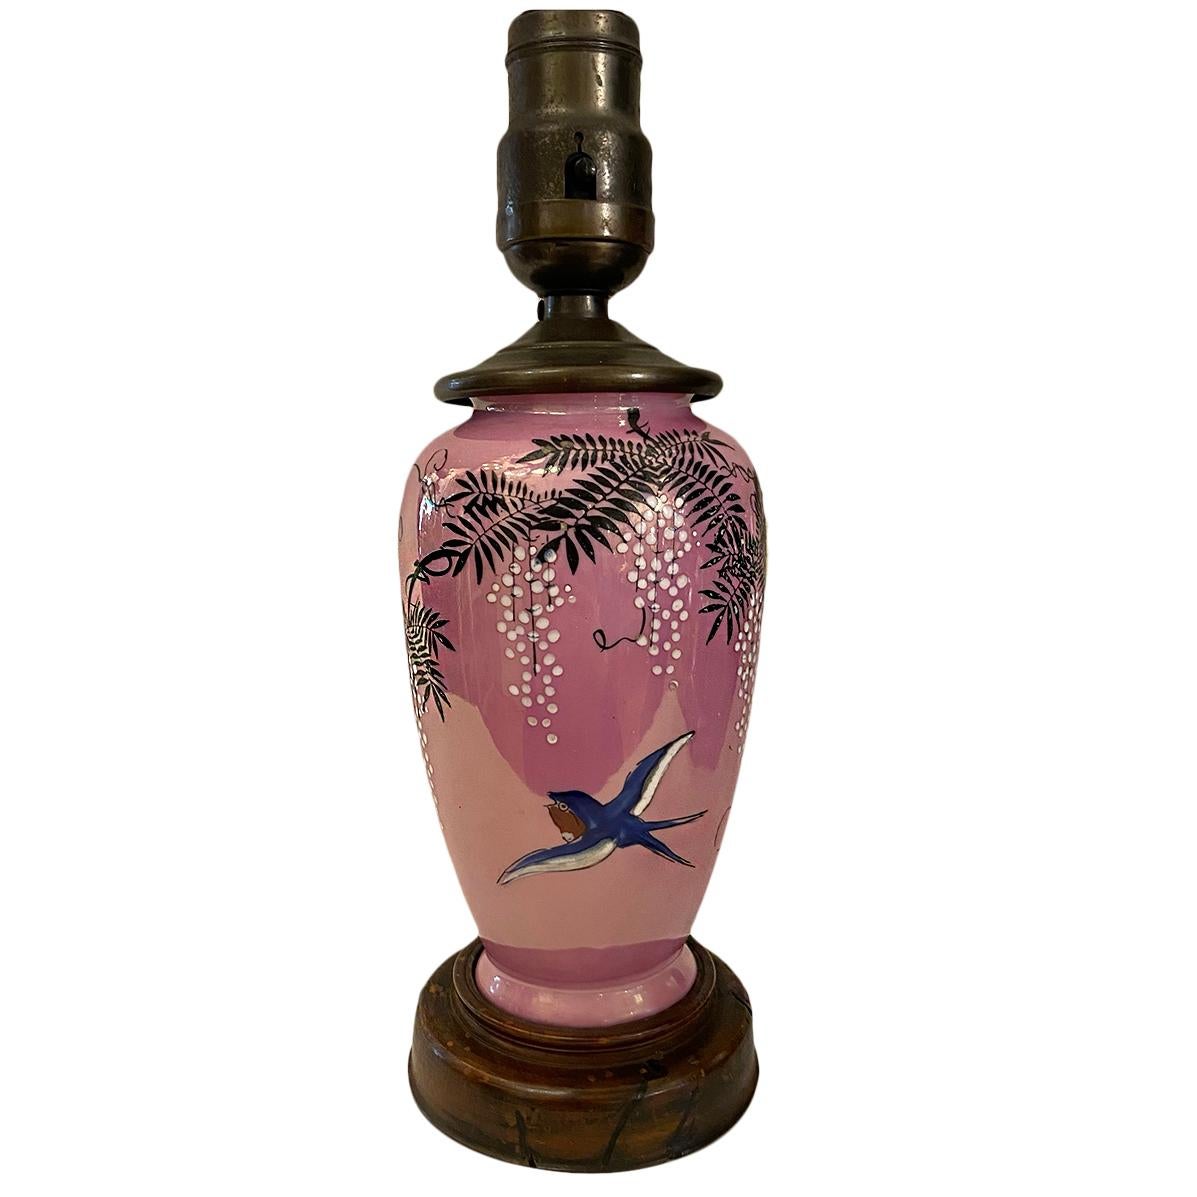 Vase en porcelaine japonaise du XIXe siècle, à décor floral et d'oiseaux, monté en lampe.

Mesures :
Hauteur du corps : 8 pouces
Diamètre de la base : 3.75